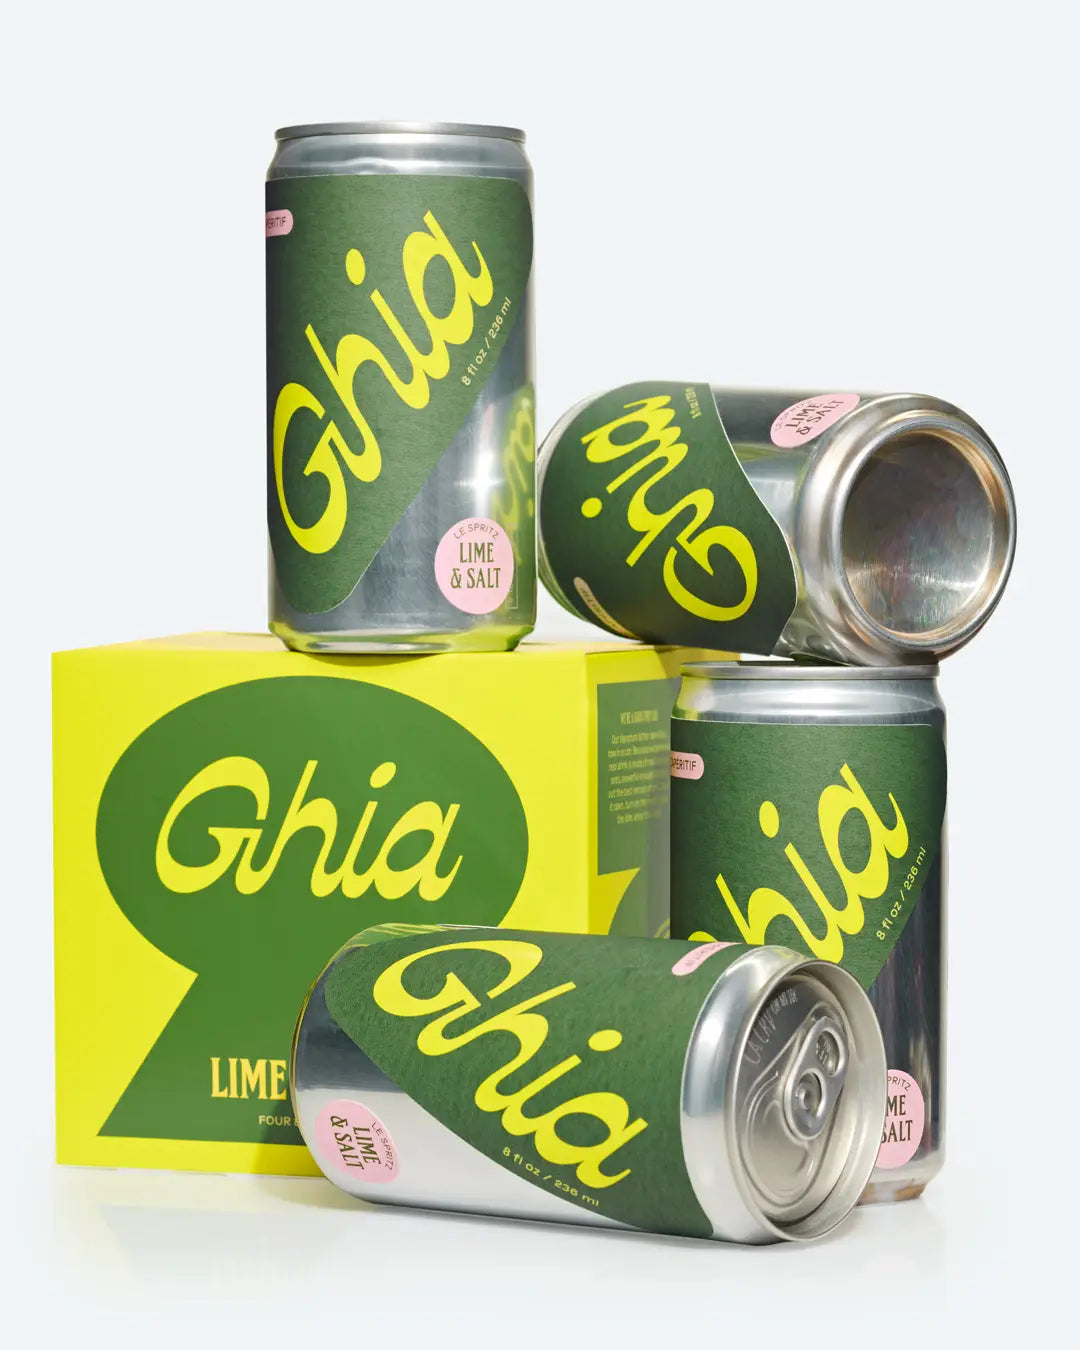 Ghia Le Spritz Lime & Salt, 236mL/8floz